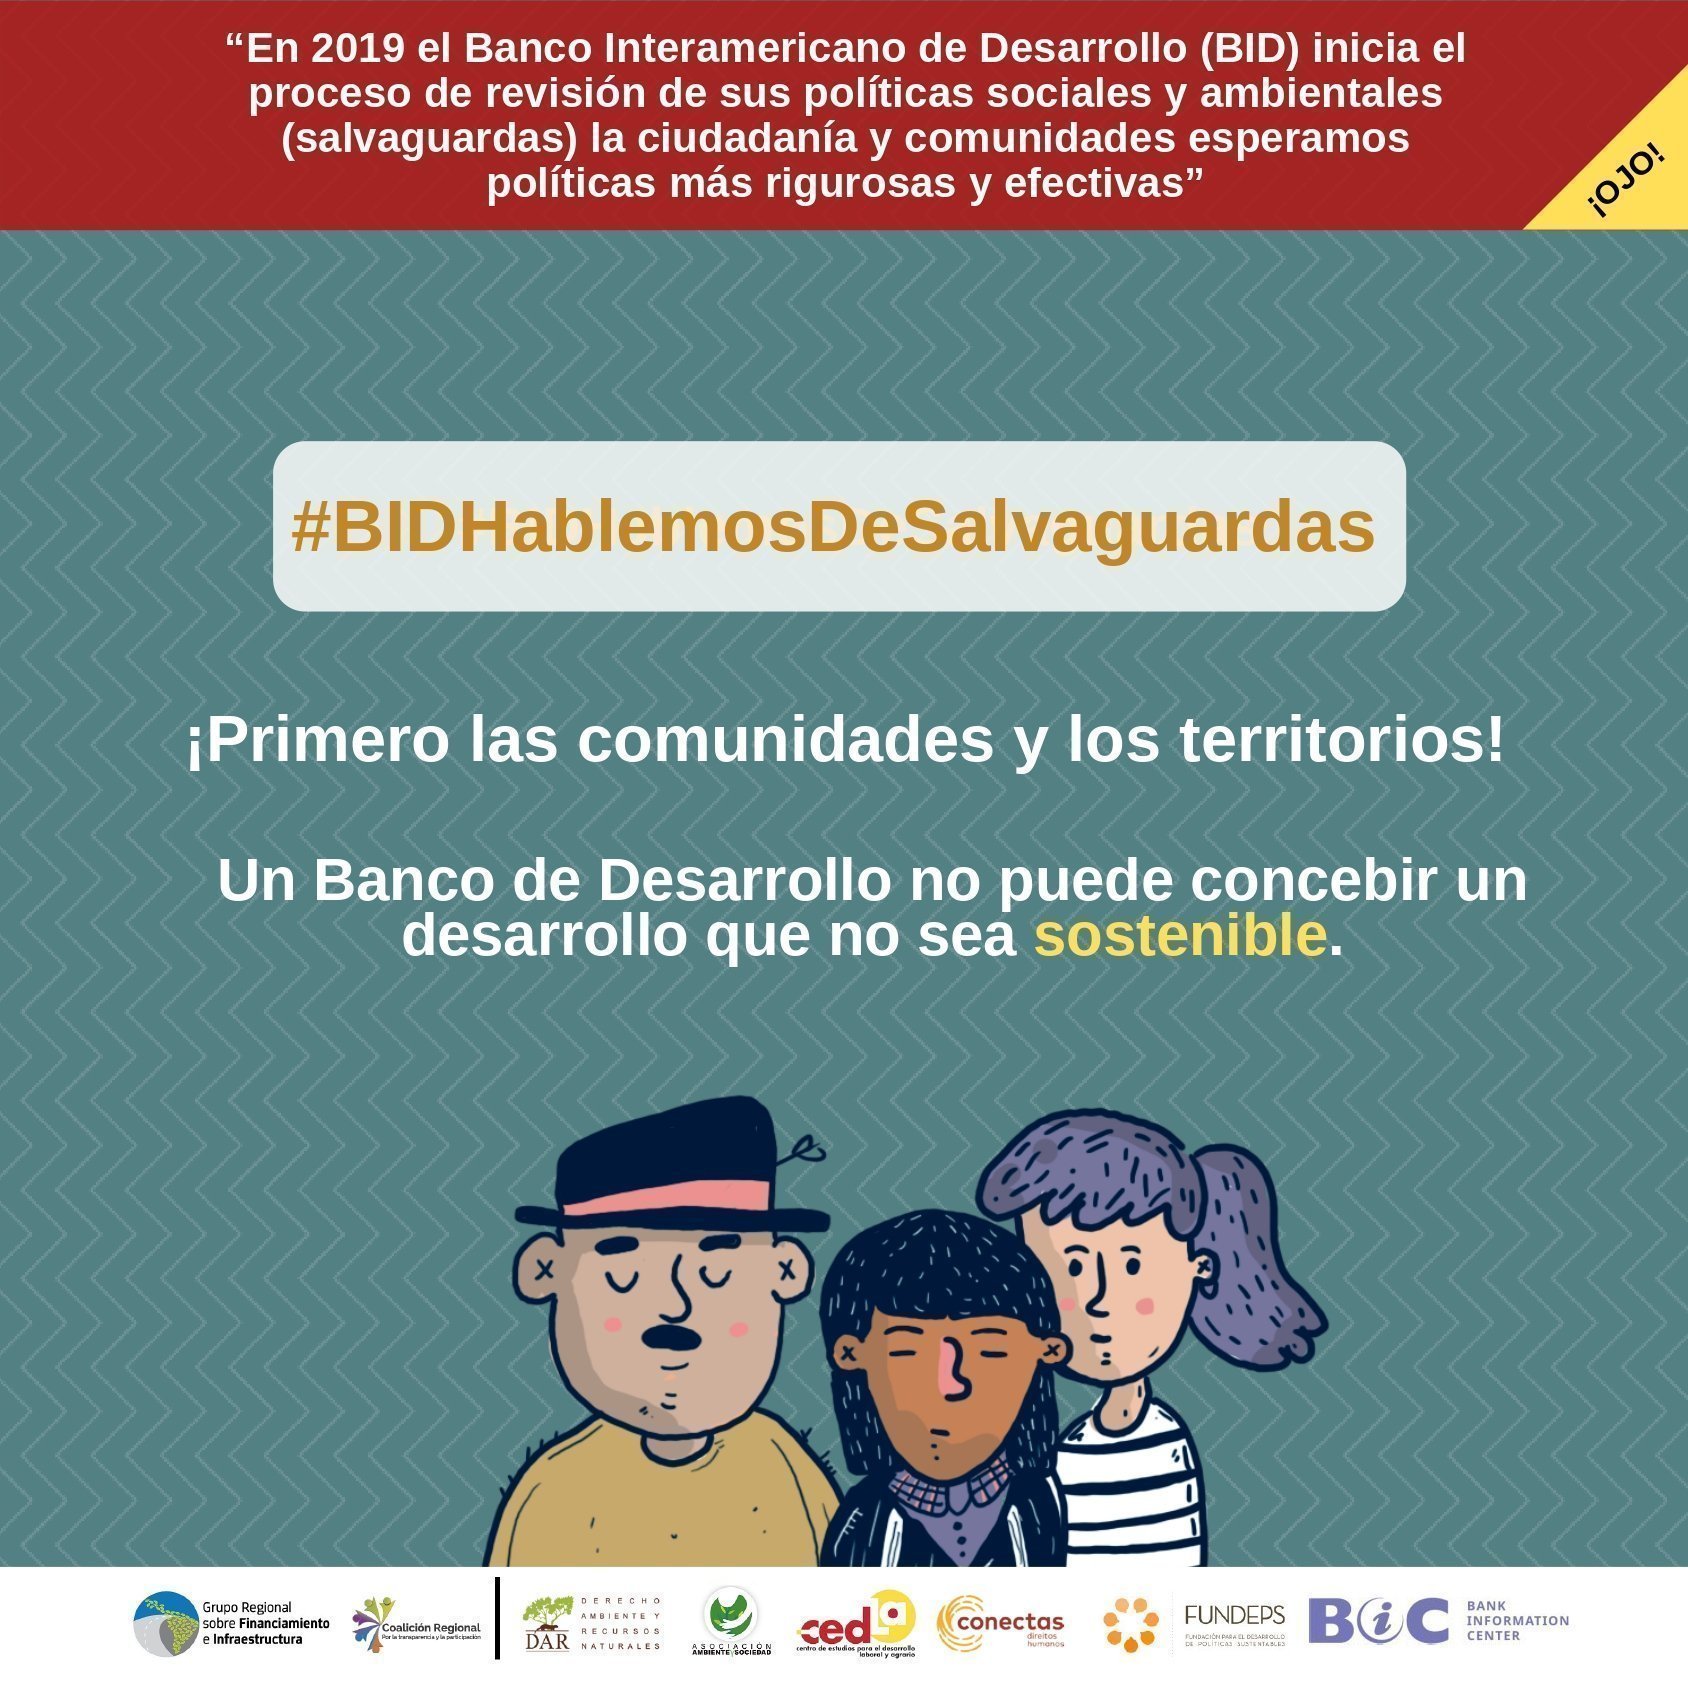 BID banco interamericano de desarrollo salvaguardas desarrollo sostenible comunidades territorios